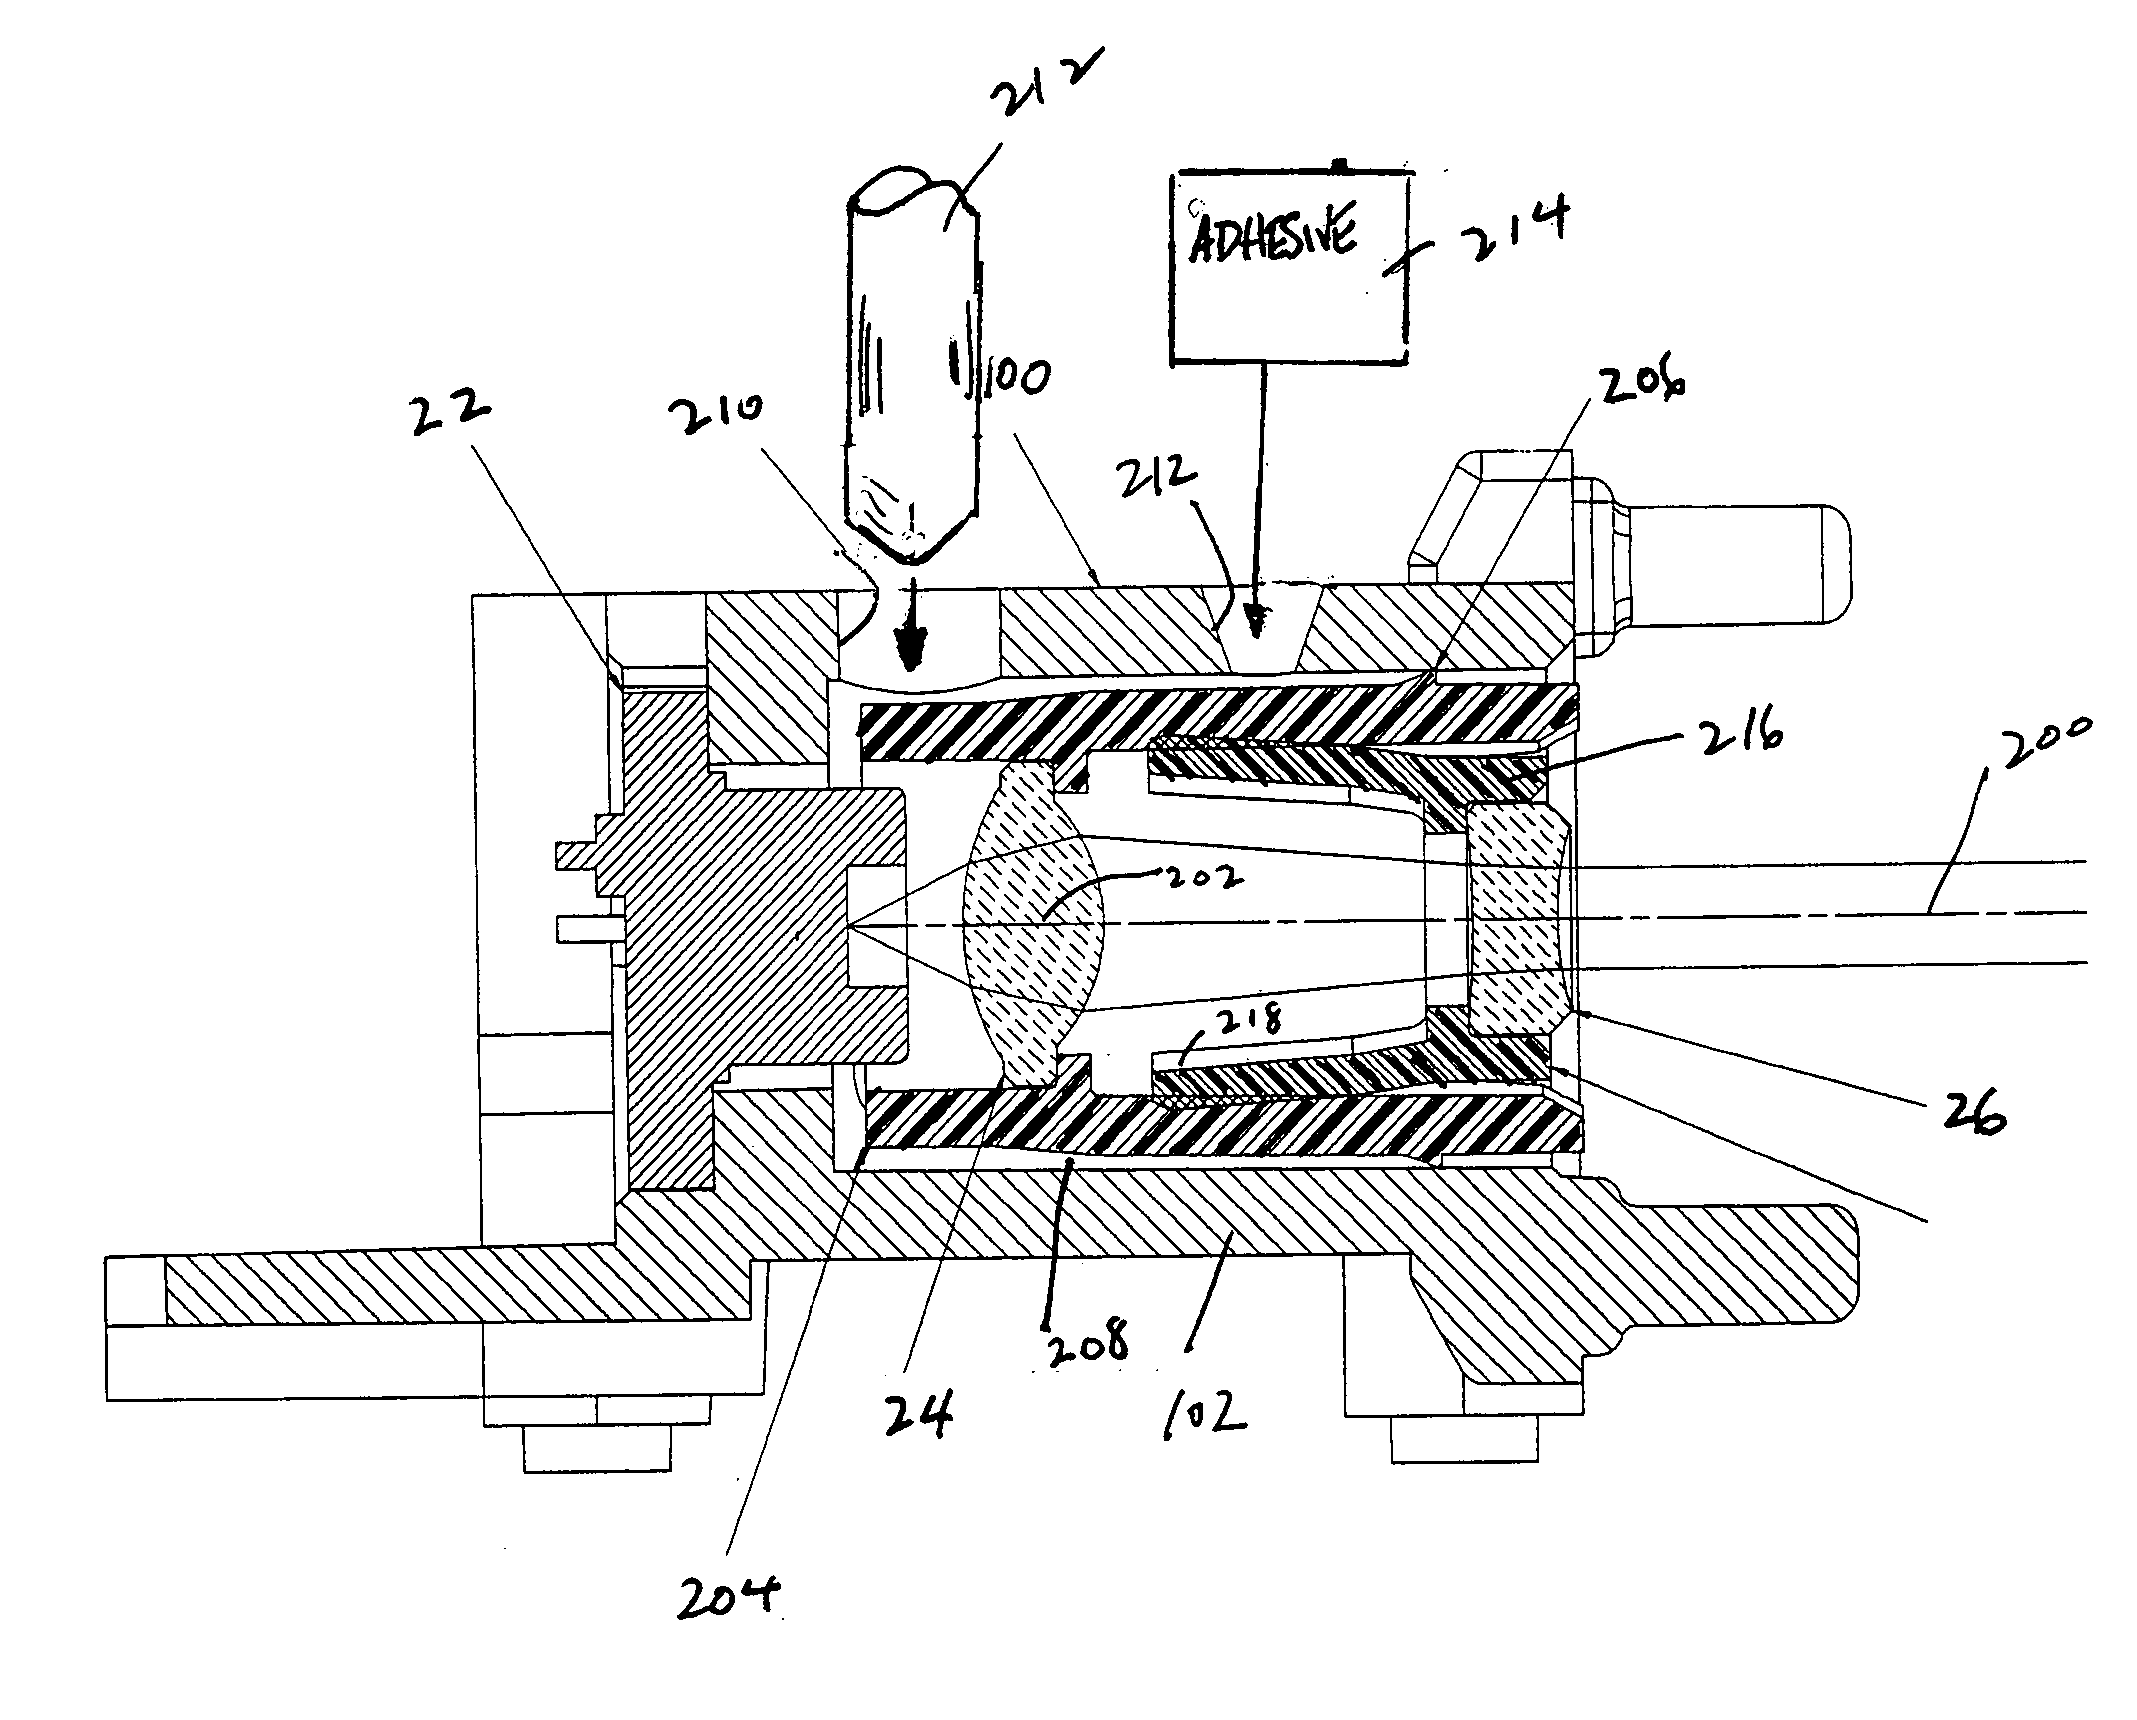 Laser beam focusing arrangement and method